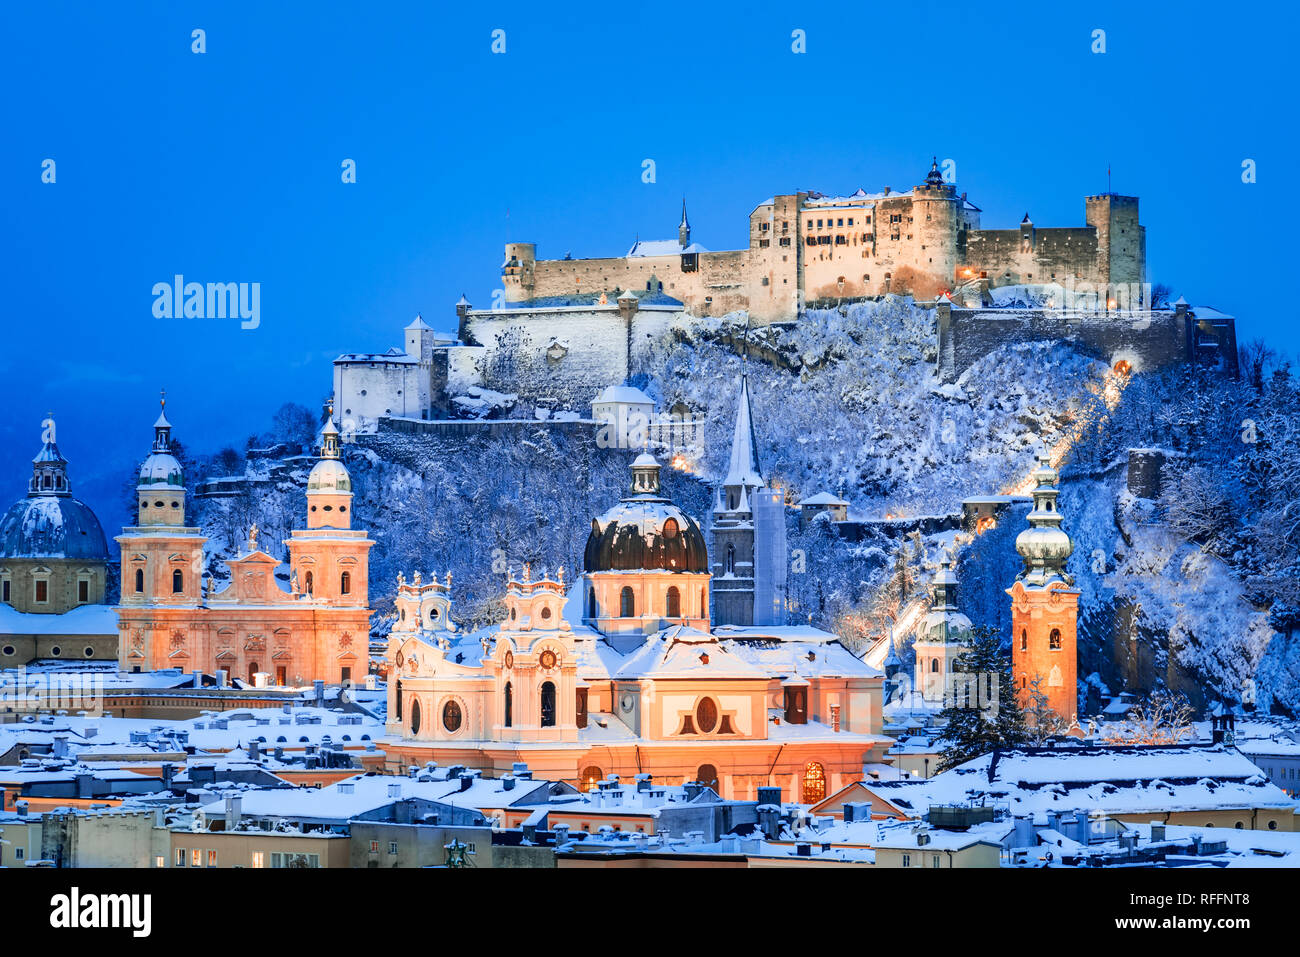 Salzburgo, Austria: Invierno lecturade la histórica ciudad de Salzburgo con la famosa Festung Hohensalzburg y el río Salzach iluminado en el hermoso crepúsculo Foto de stock